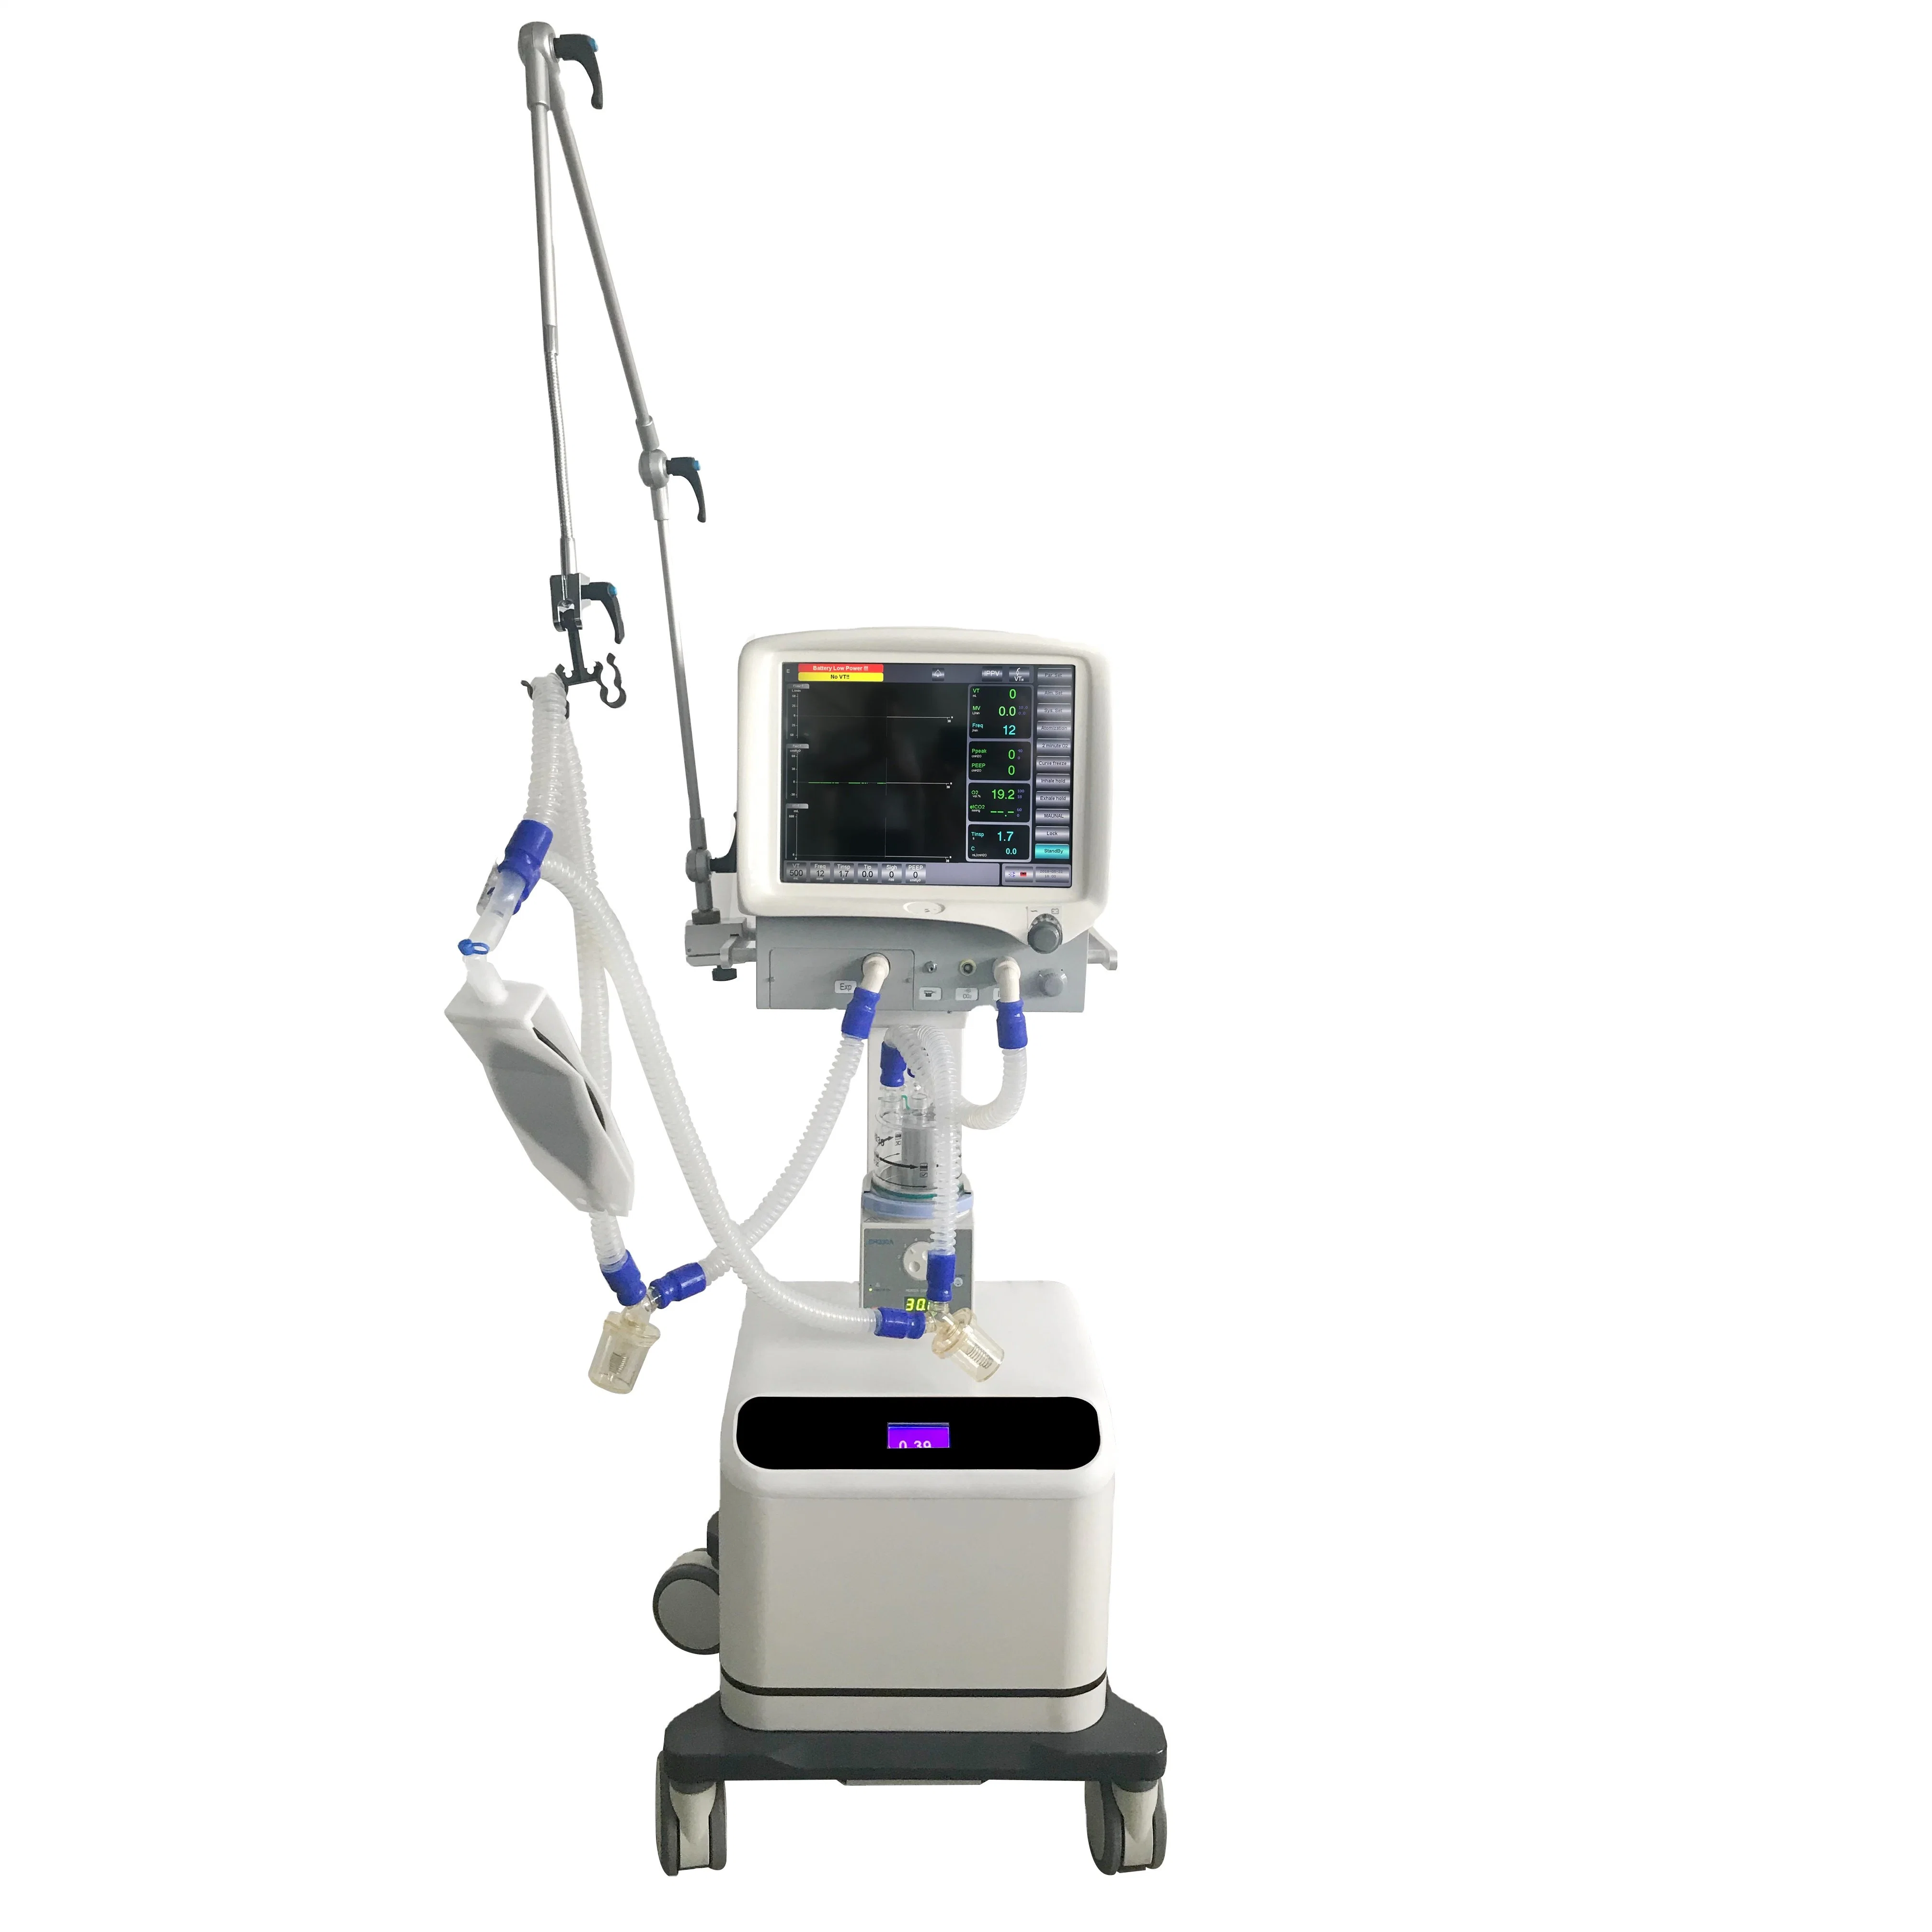 جهاز تهوية يعمل باللمس بمستشفى جهاز التنفس الصناعي ICU بشاشة LCD مقاس 15 بوصة بتقنية TFT مع الضاغط